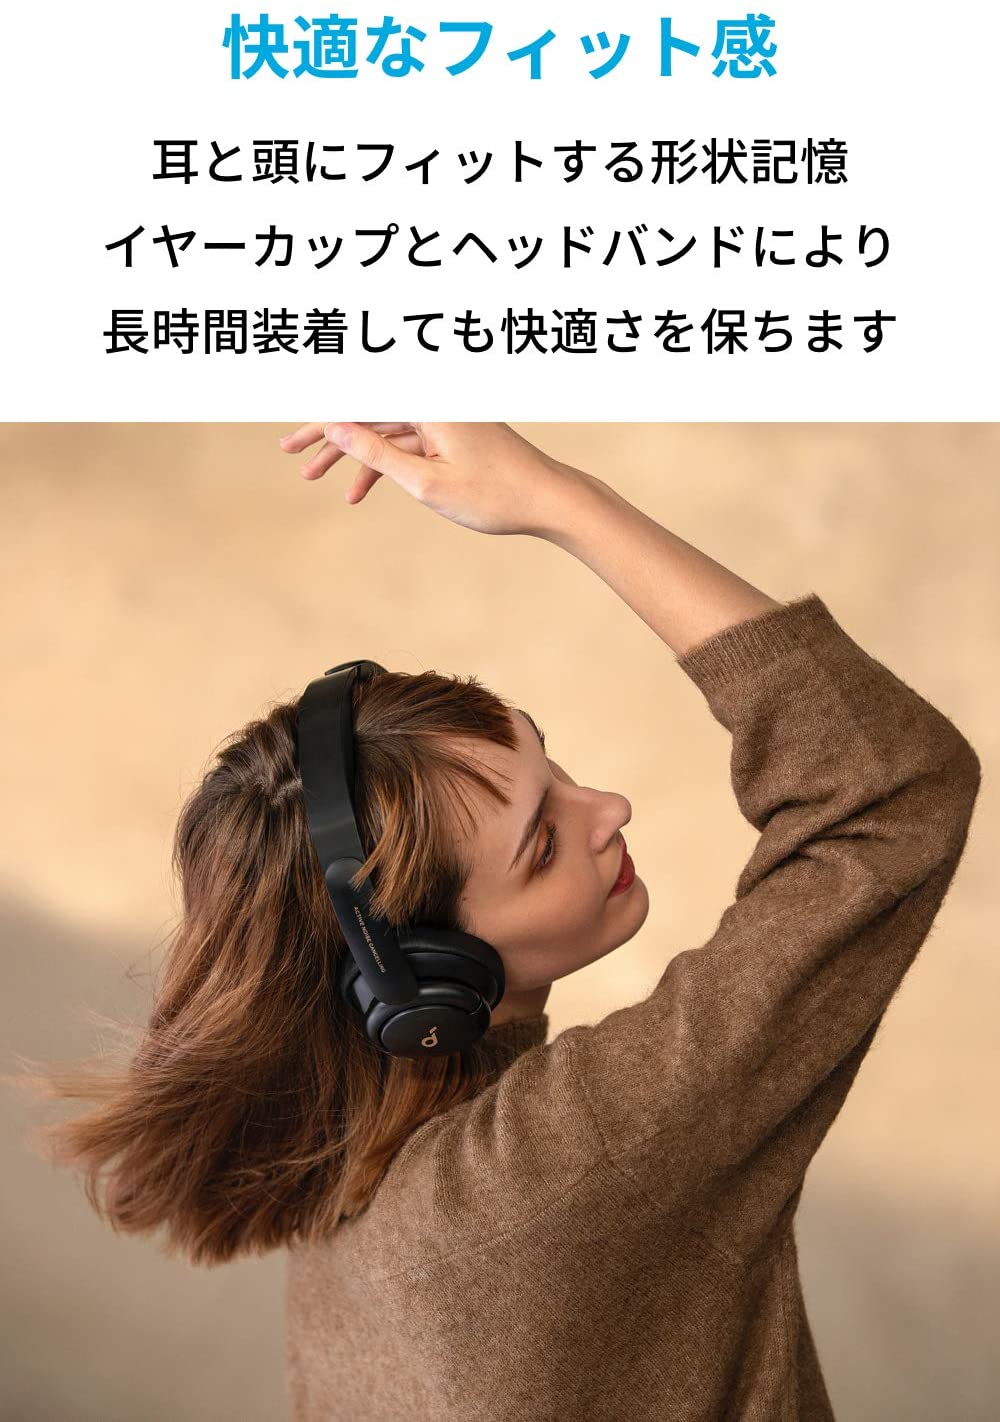 Anker Soundcore Life Q30（Bluetooth5.0 オーバーイヤー型ヘッドホン）